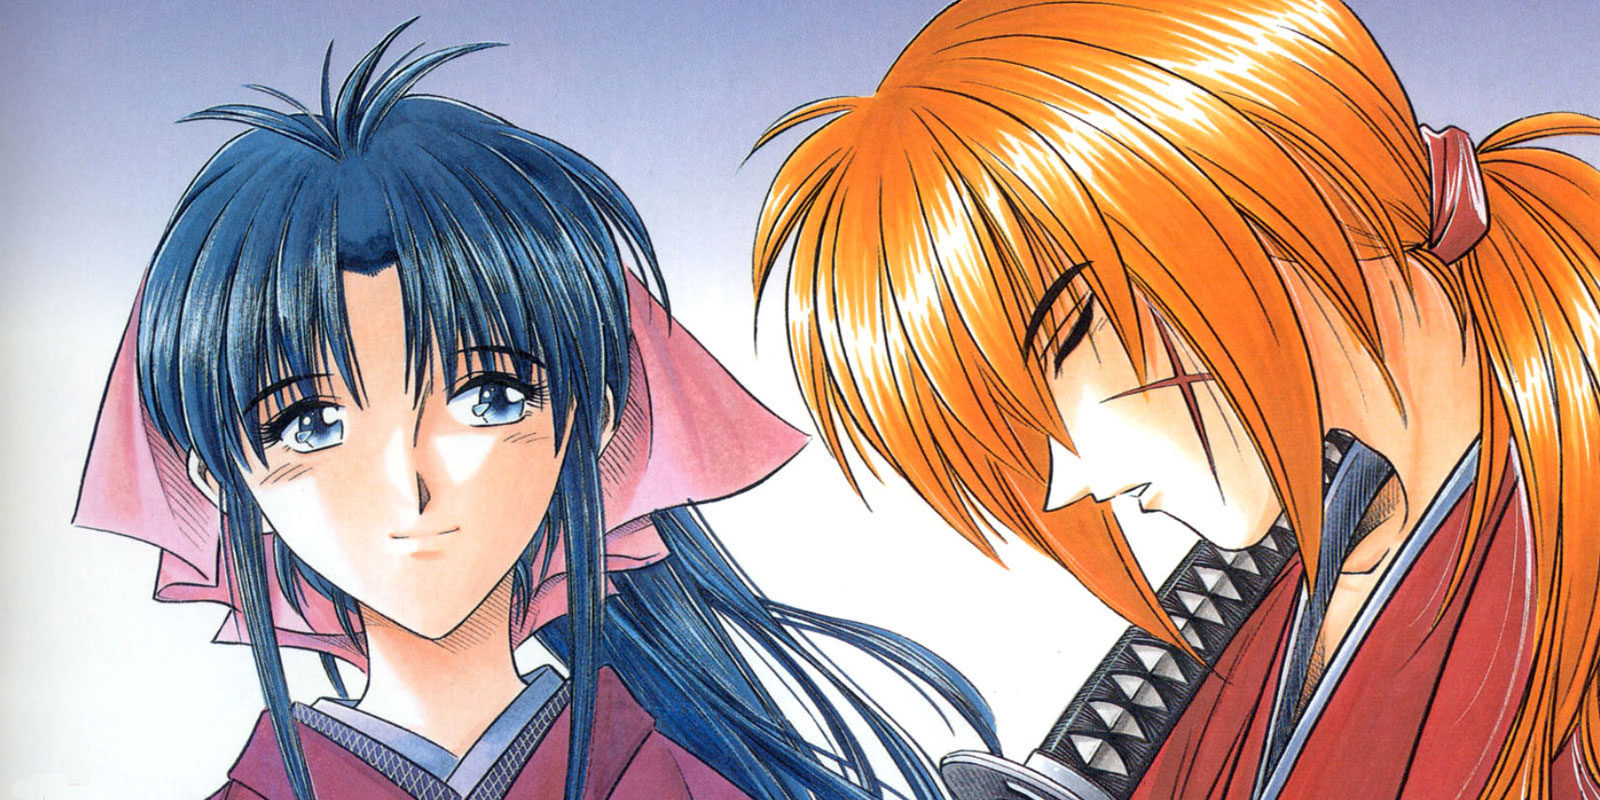 El manga 'Rurouni Kenshin' regresa con una nueva historia